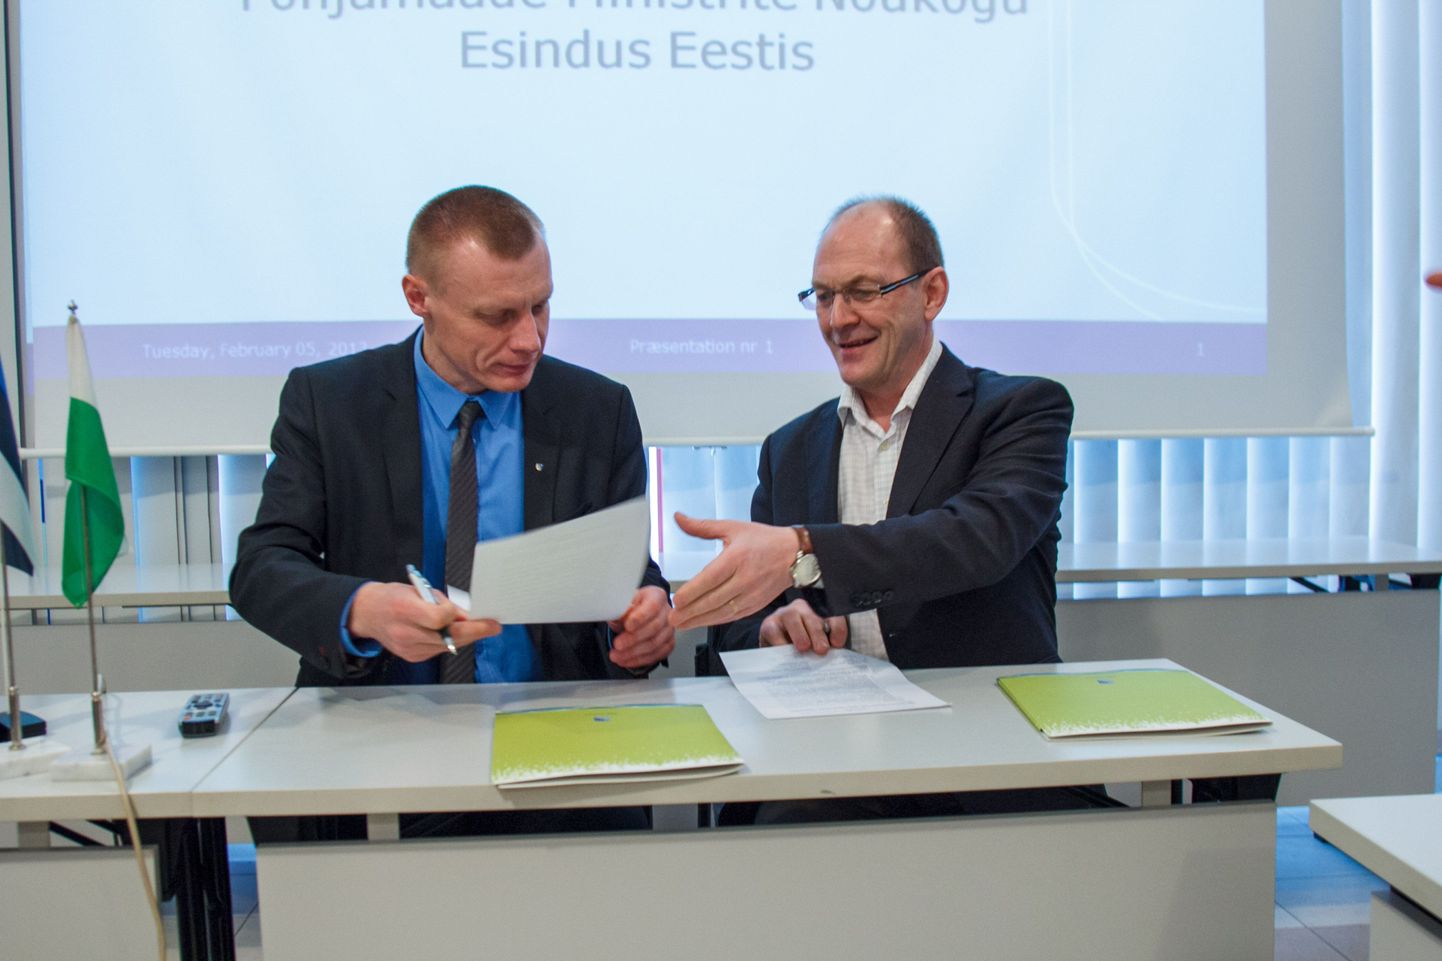 Põhjamaa Ministrite Nõukogu. Valga maavanem Margus Lepik ja PMN direktor Berth Sundström allkirjastasid koostöölepingu.